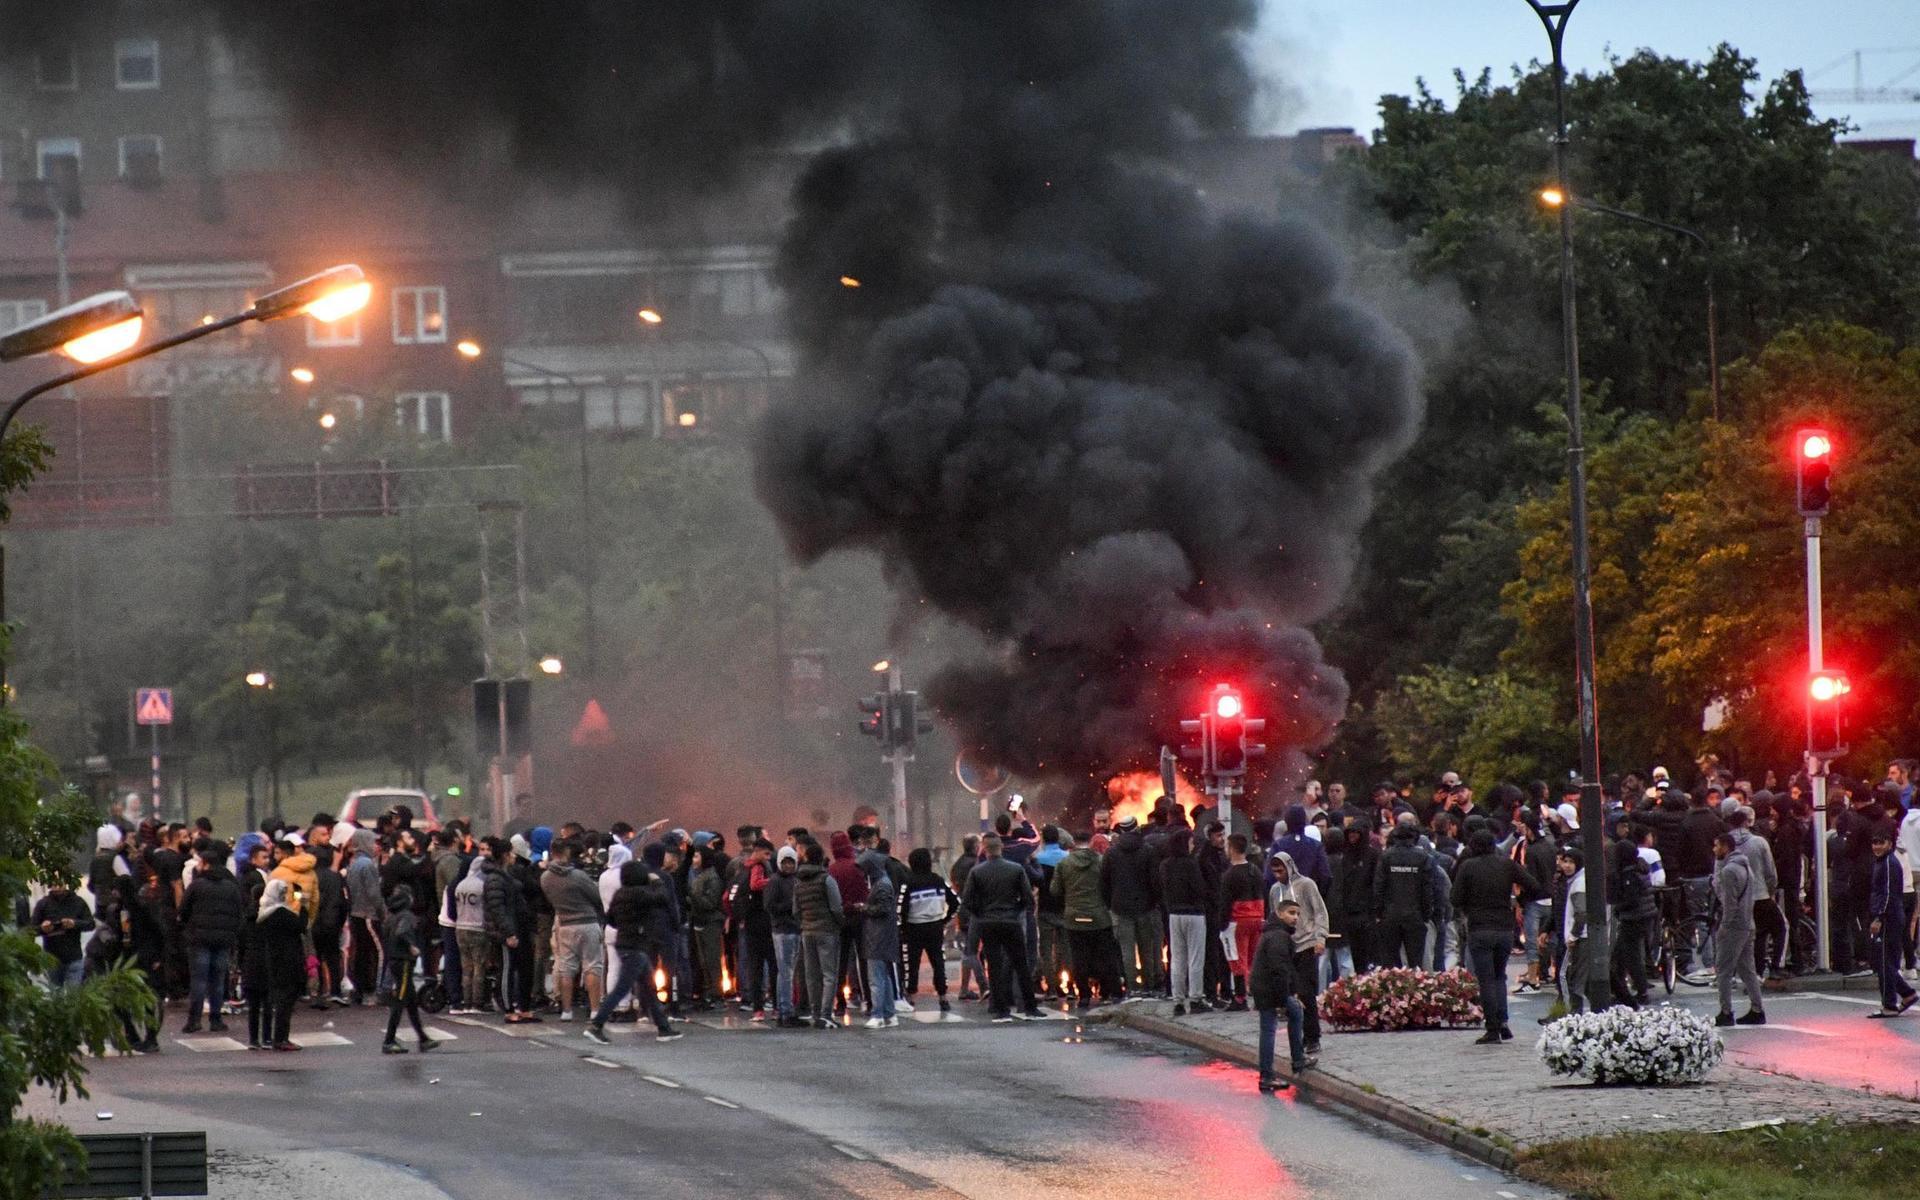 Fredagens koranbränning har lett till omfattande protester på Rosengård. Enligt polisen har 300 personer befunnit sig på Amiralsgatan, vilket helt stoppat trafiken till och från Rosengård.